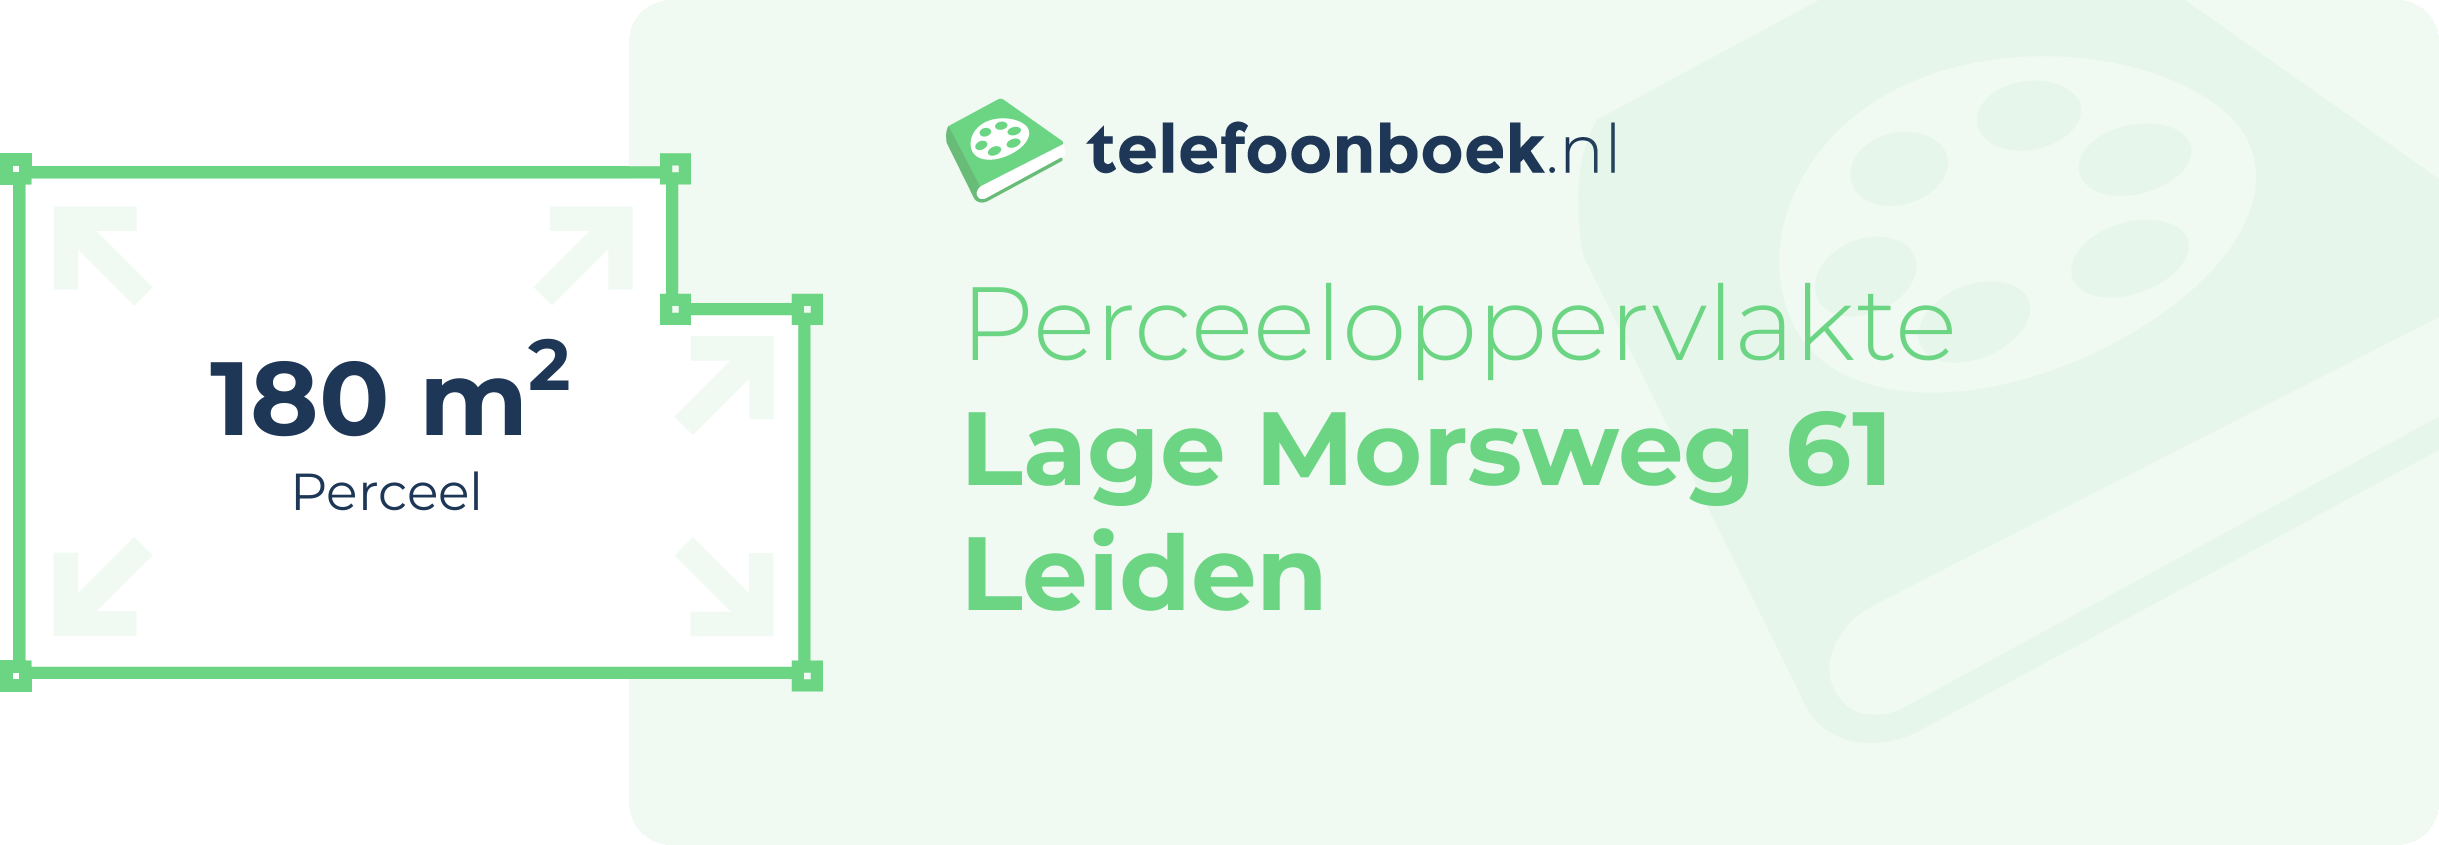 Perceeloppervlakte Lage Morsweg 61 Leiden